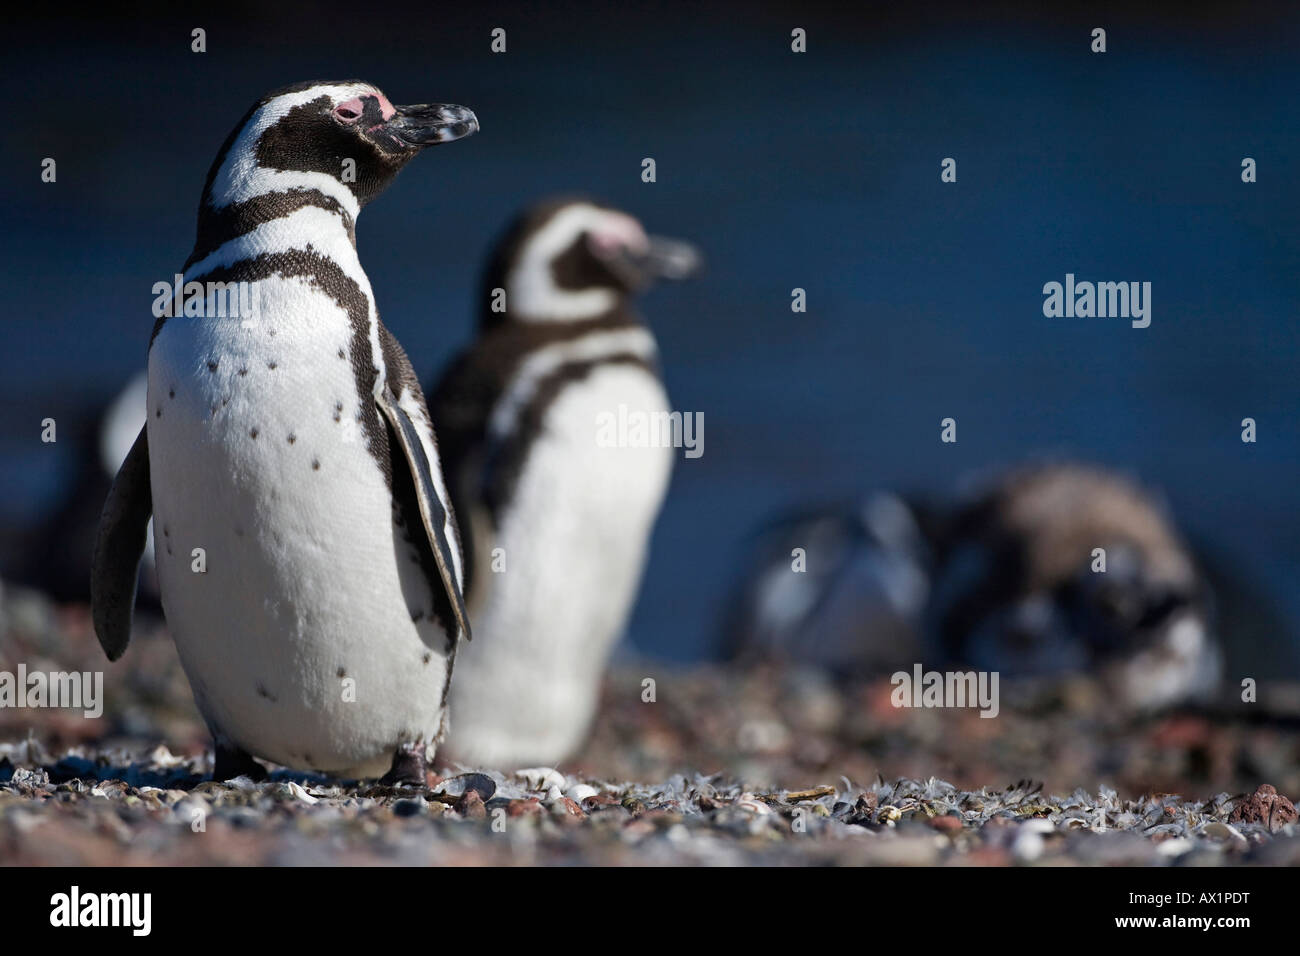 Magellanic penguins (Spheniscus magellanicus), Punta Tombo, Patagonia, east coast, Atlantic Ozean, Argentina, South America Stock Photo